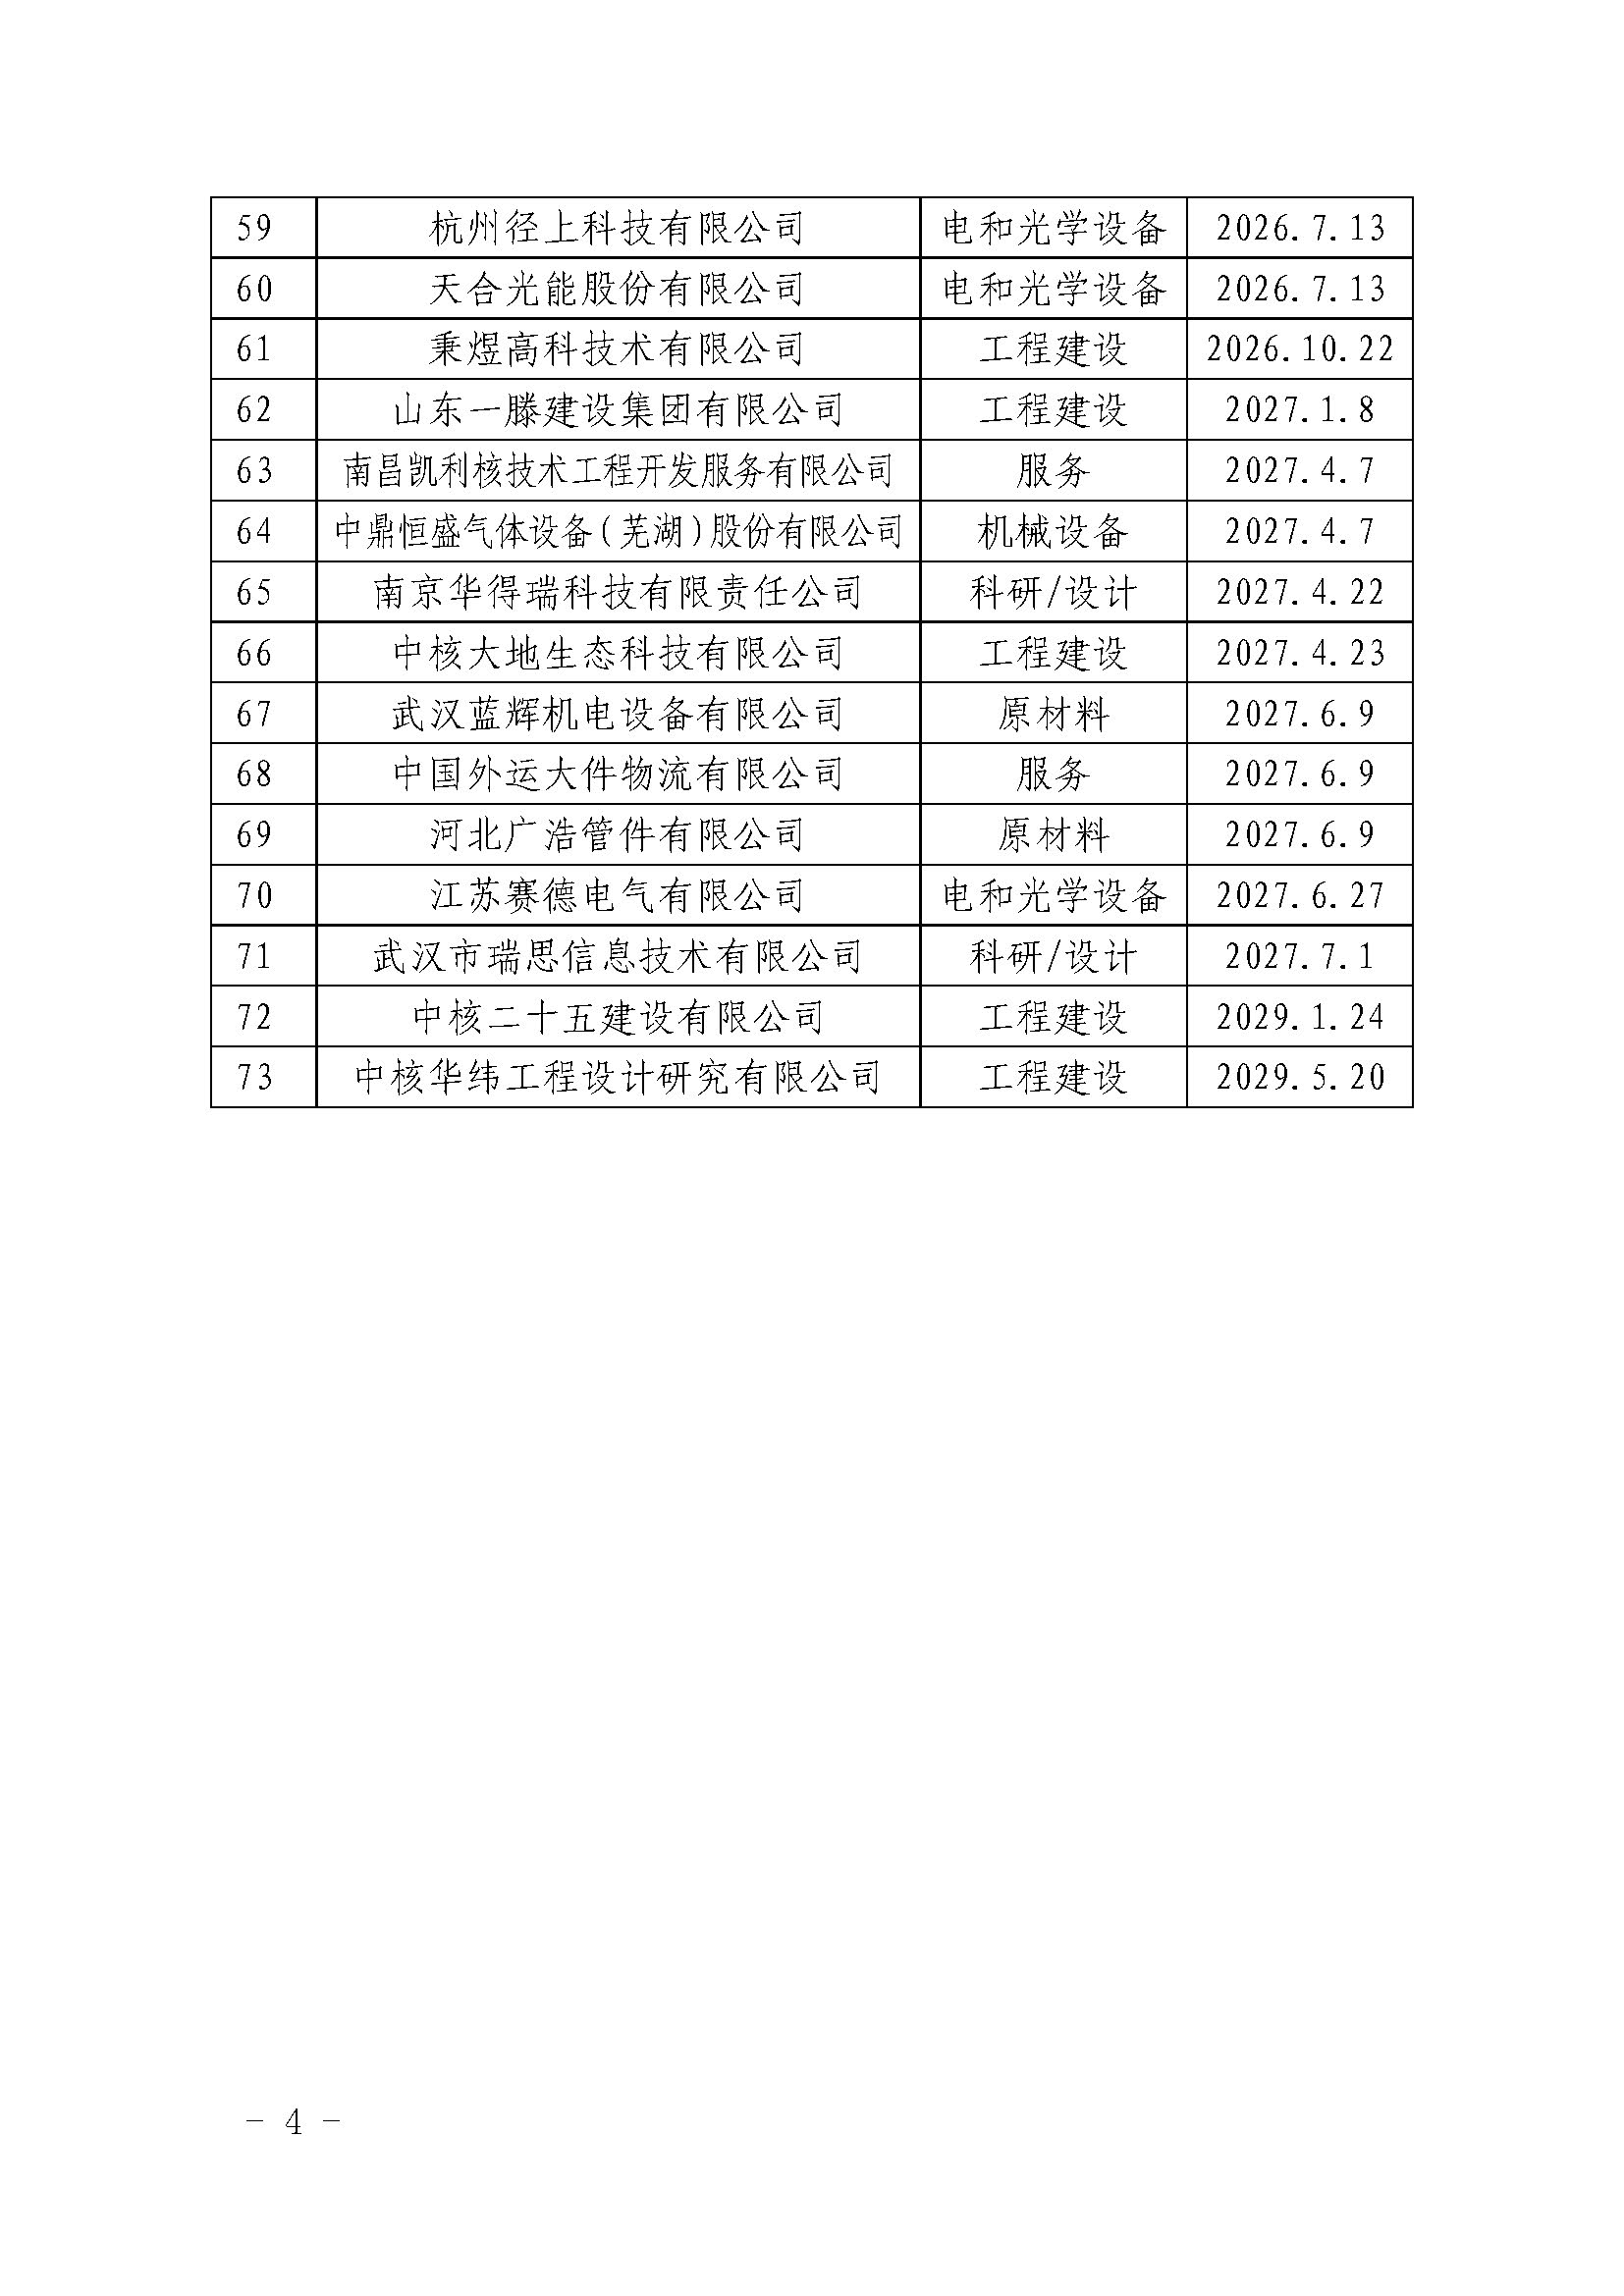 中国核能行业协会关于发布第二十九批核能行业合格供应商名录的公告_页面_4.jpg